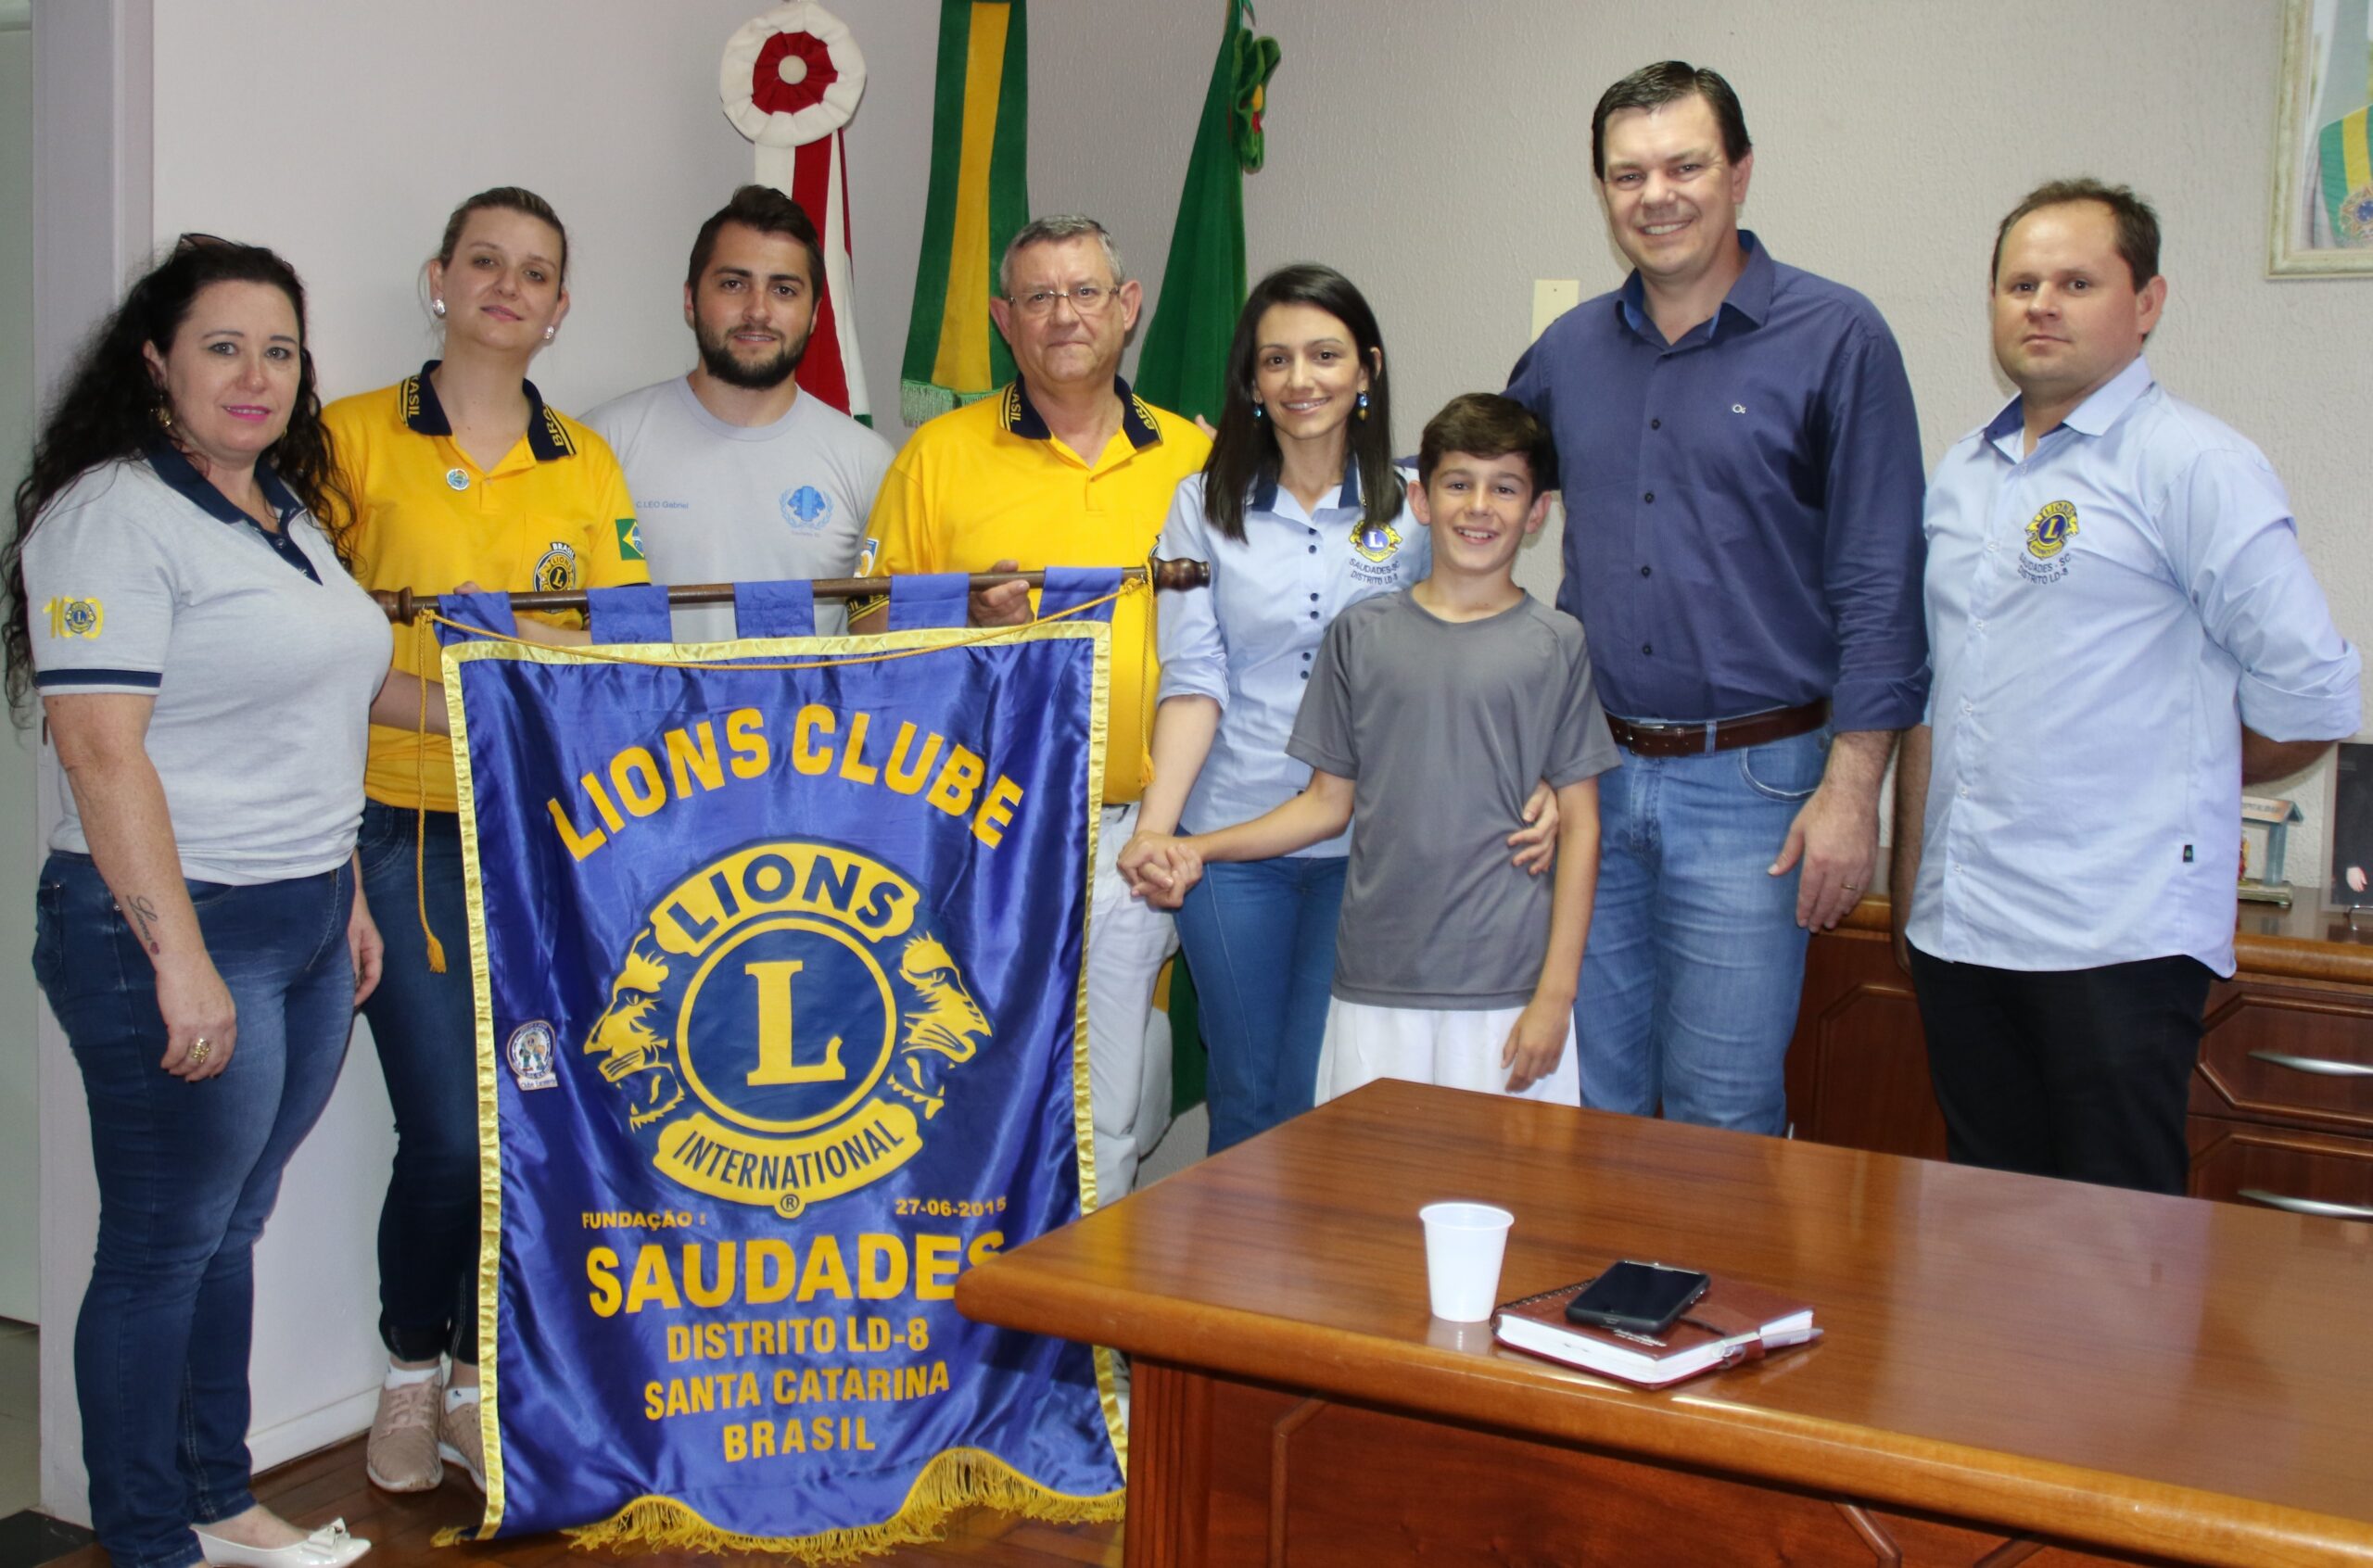 Membros do Lions Clube foram recebidos pelo prefeito Daniel na sede do executivo municipal